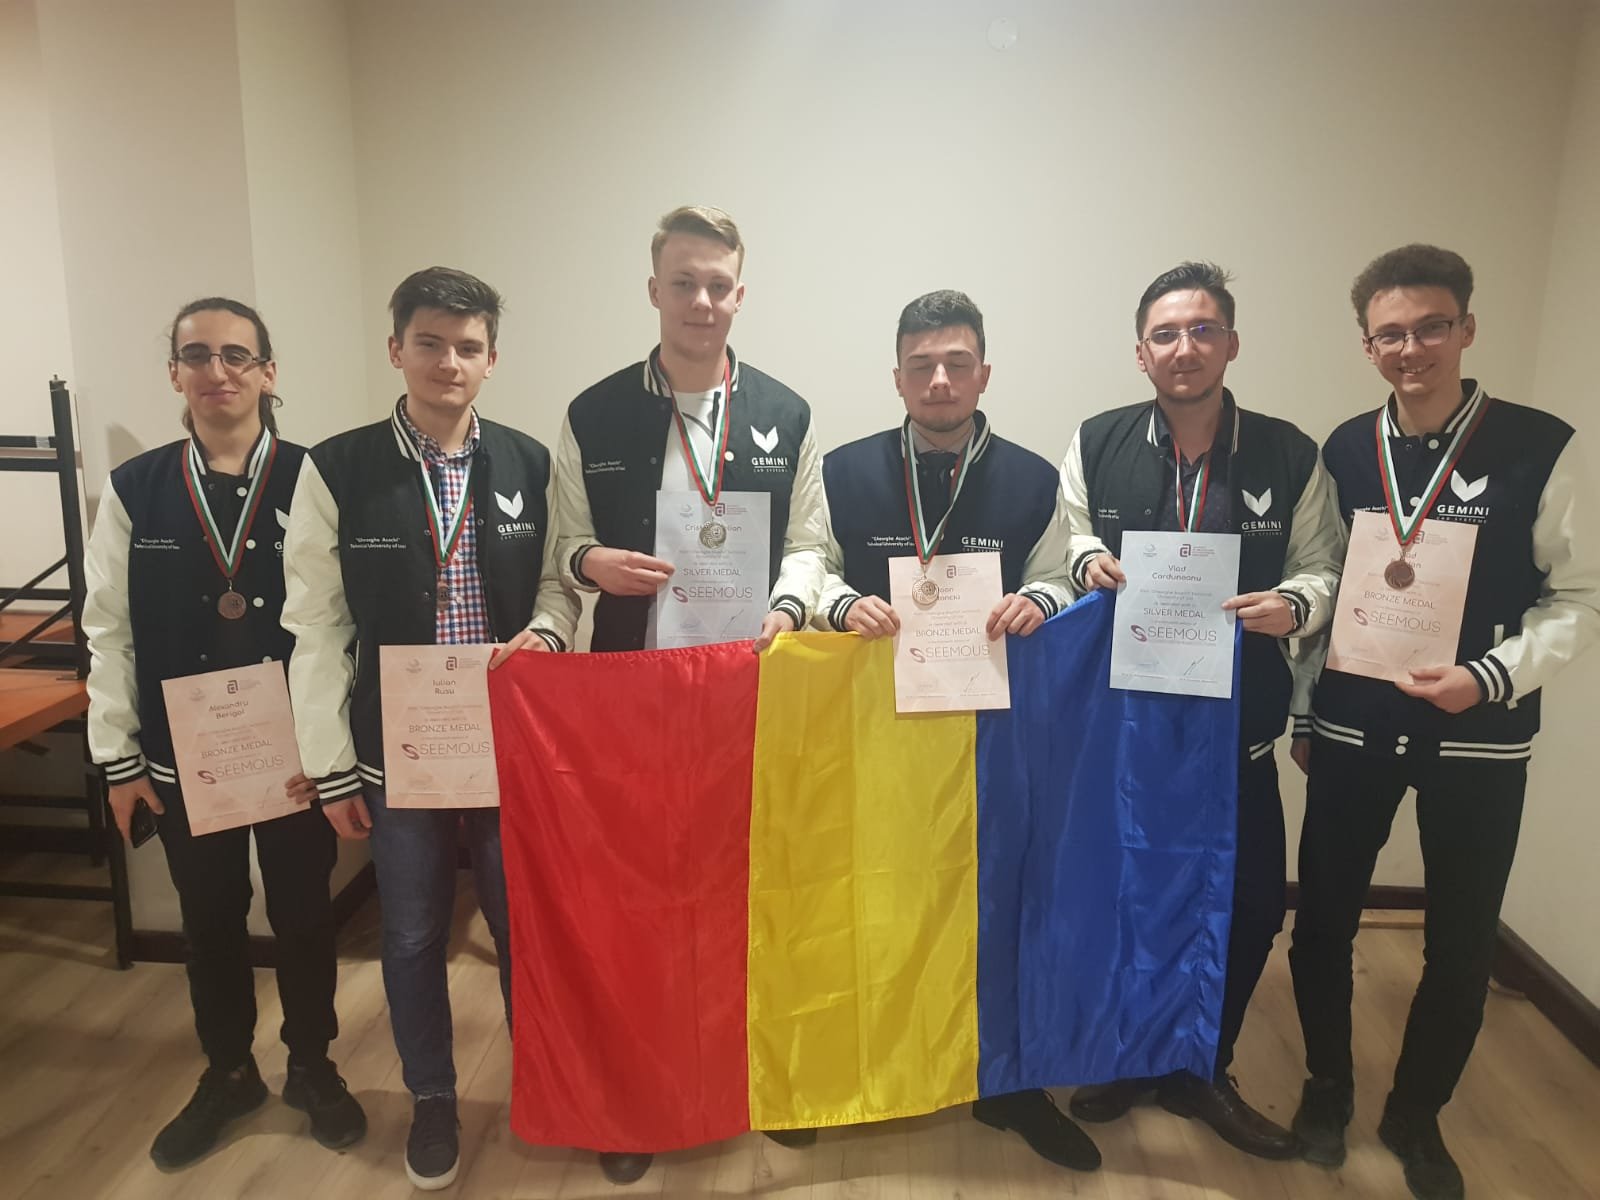  Șase medalii pentru șase studenți de la TUIASI la Olimpiada internațională de matematică SEEMOUS